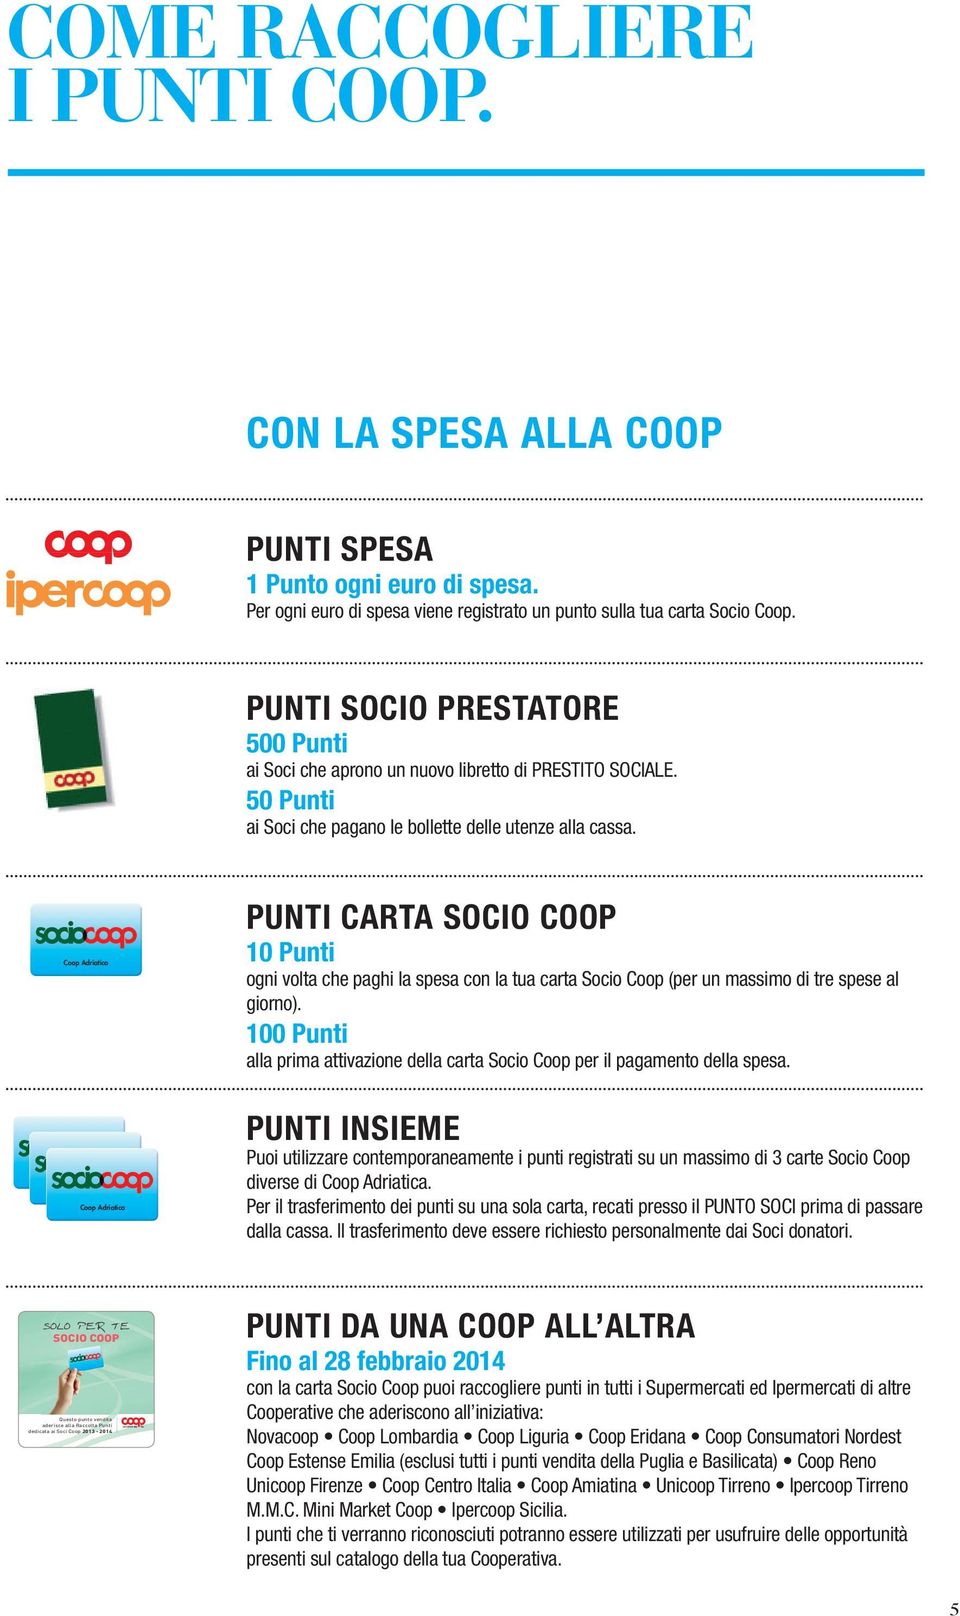 Coop Adriatica Punti Carta Socio Coop 10 Punti ogni volta che paghi la spesa con la tua carta Socio Coop (per un massimo di tre spese al giorno).